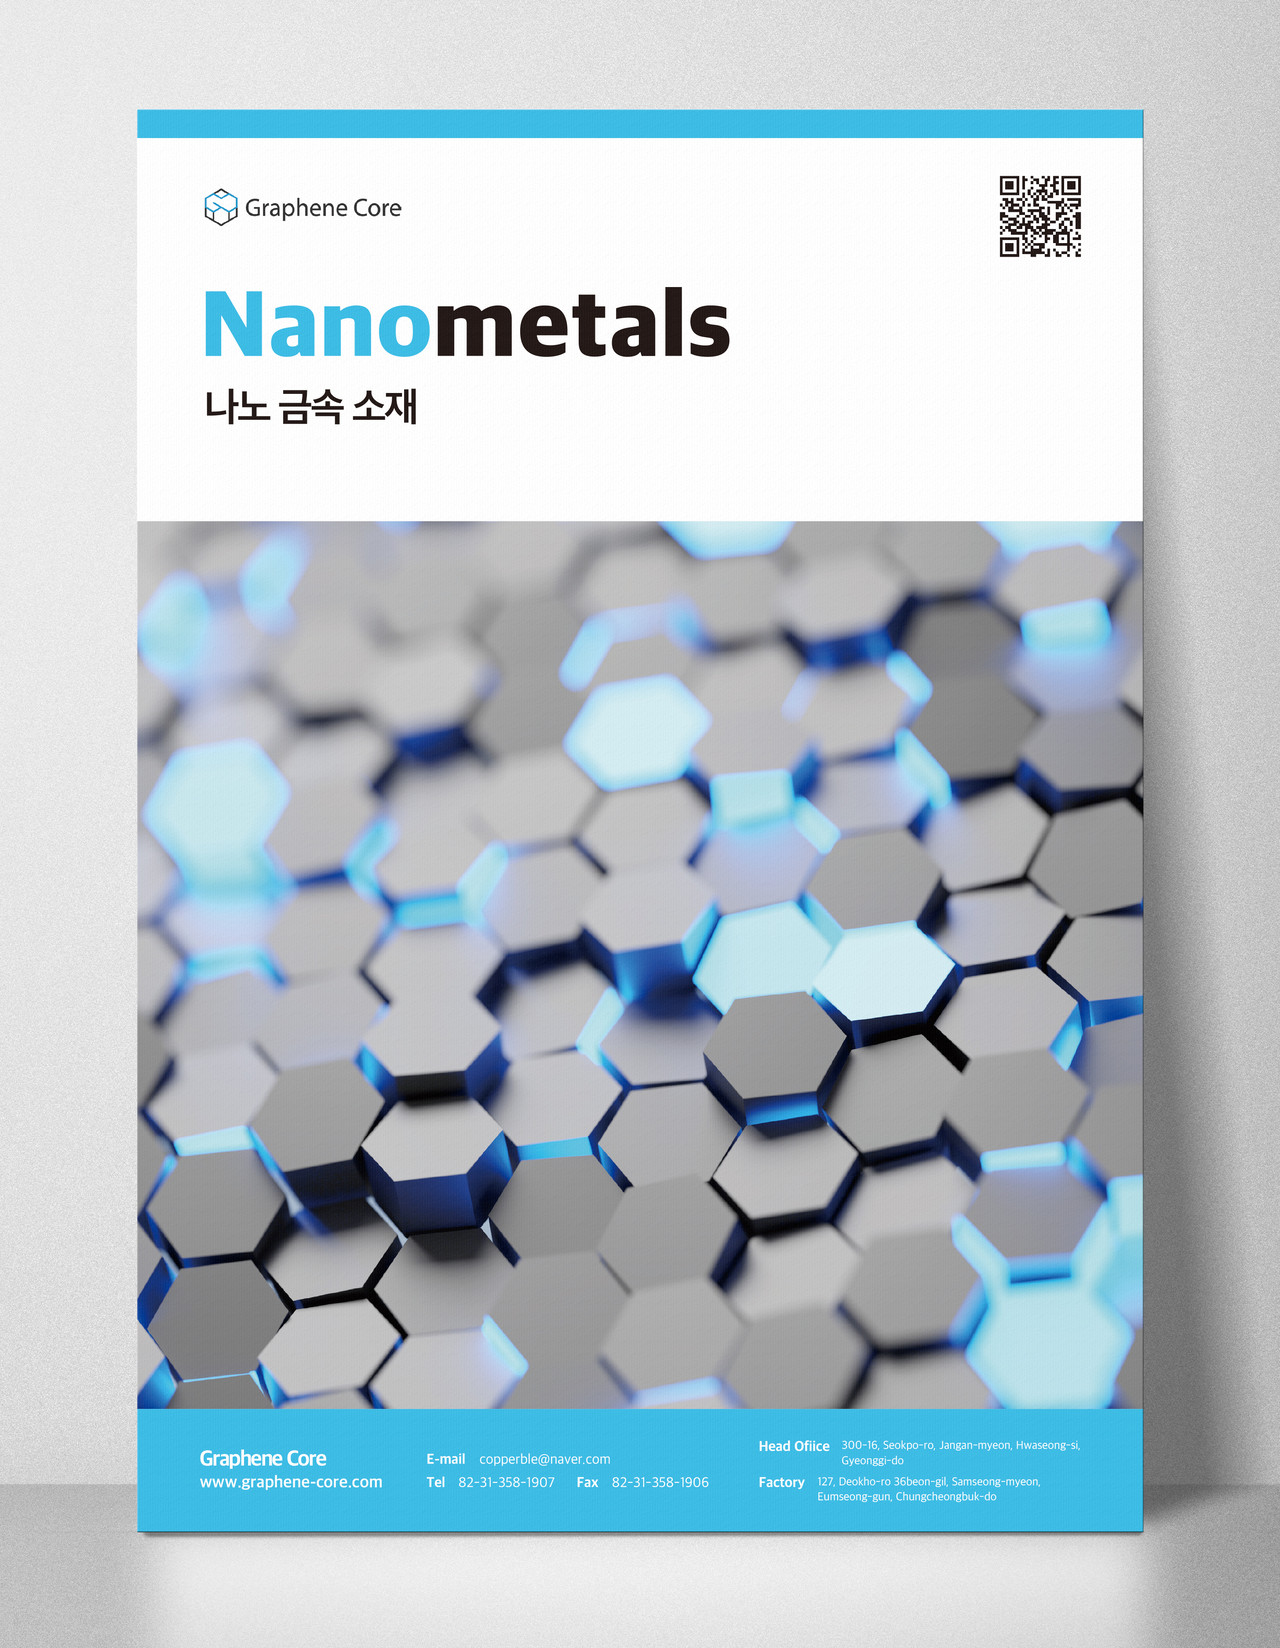 Nano metals